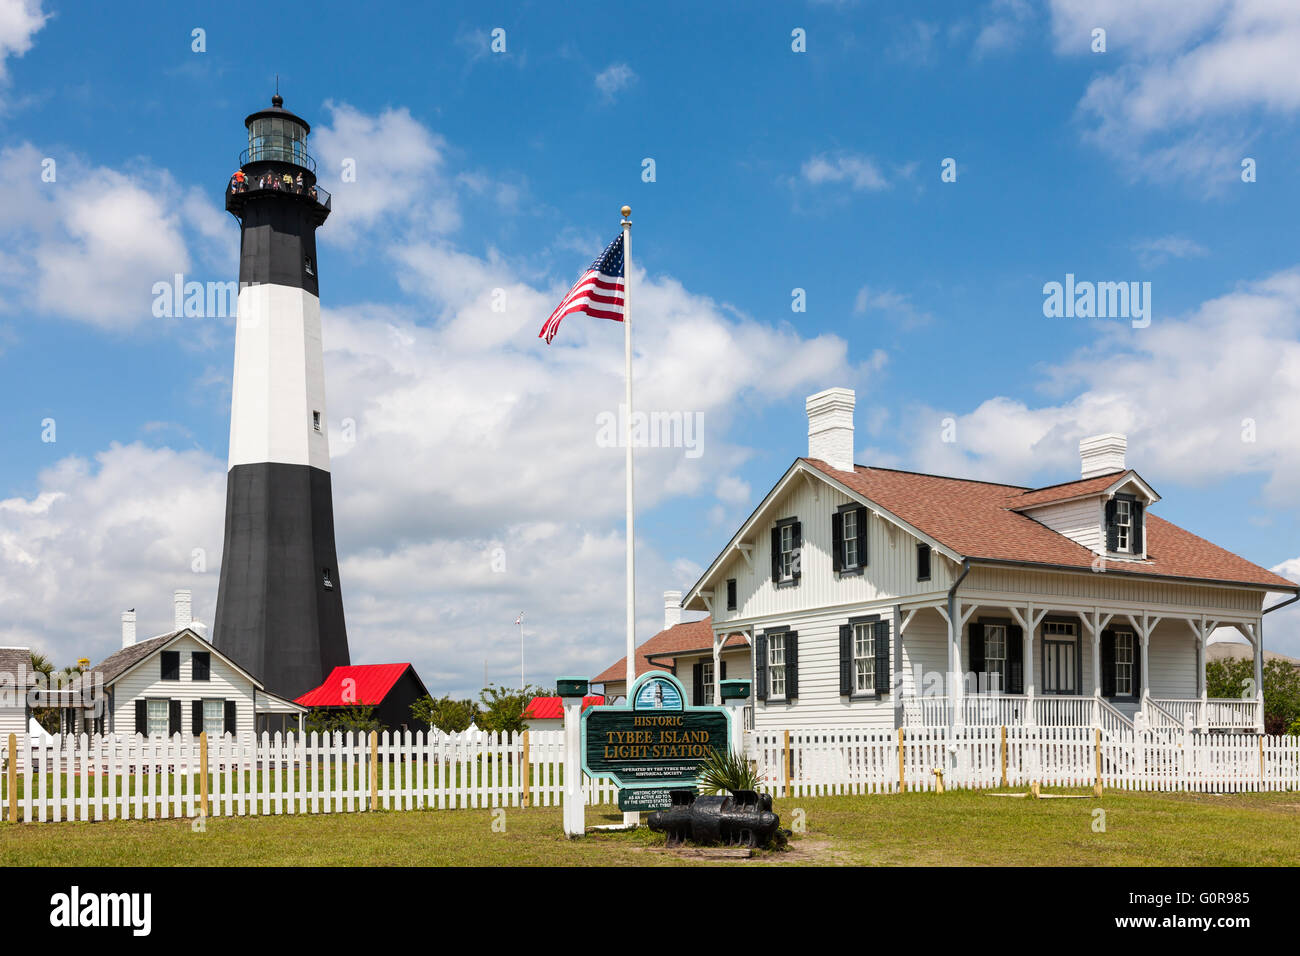 Die historischen Tybee Island Light Station auf Tybee Island in der Nähe von Savannah, Georgia. Stockfoto